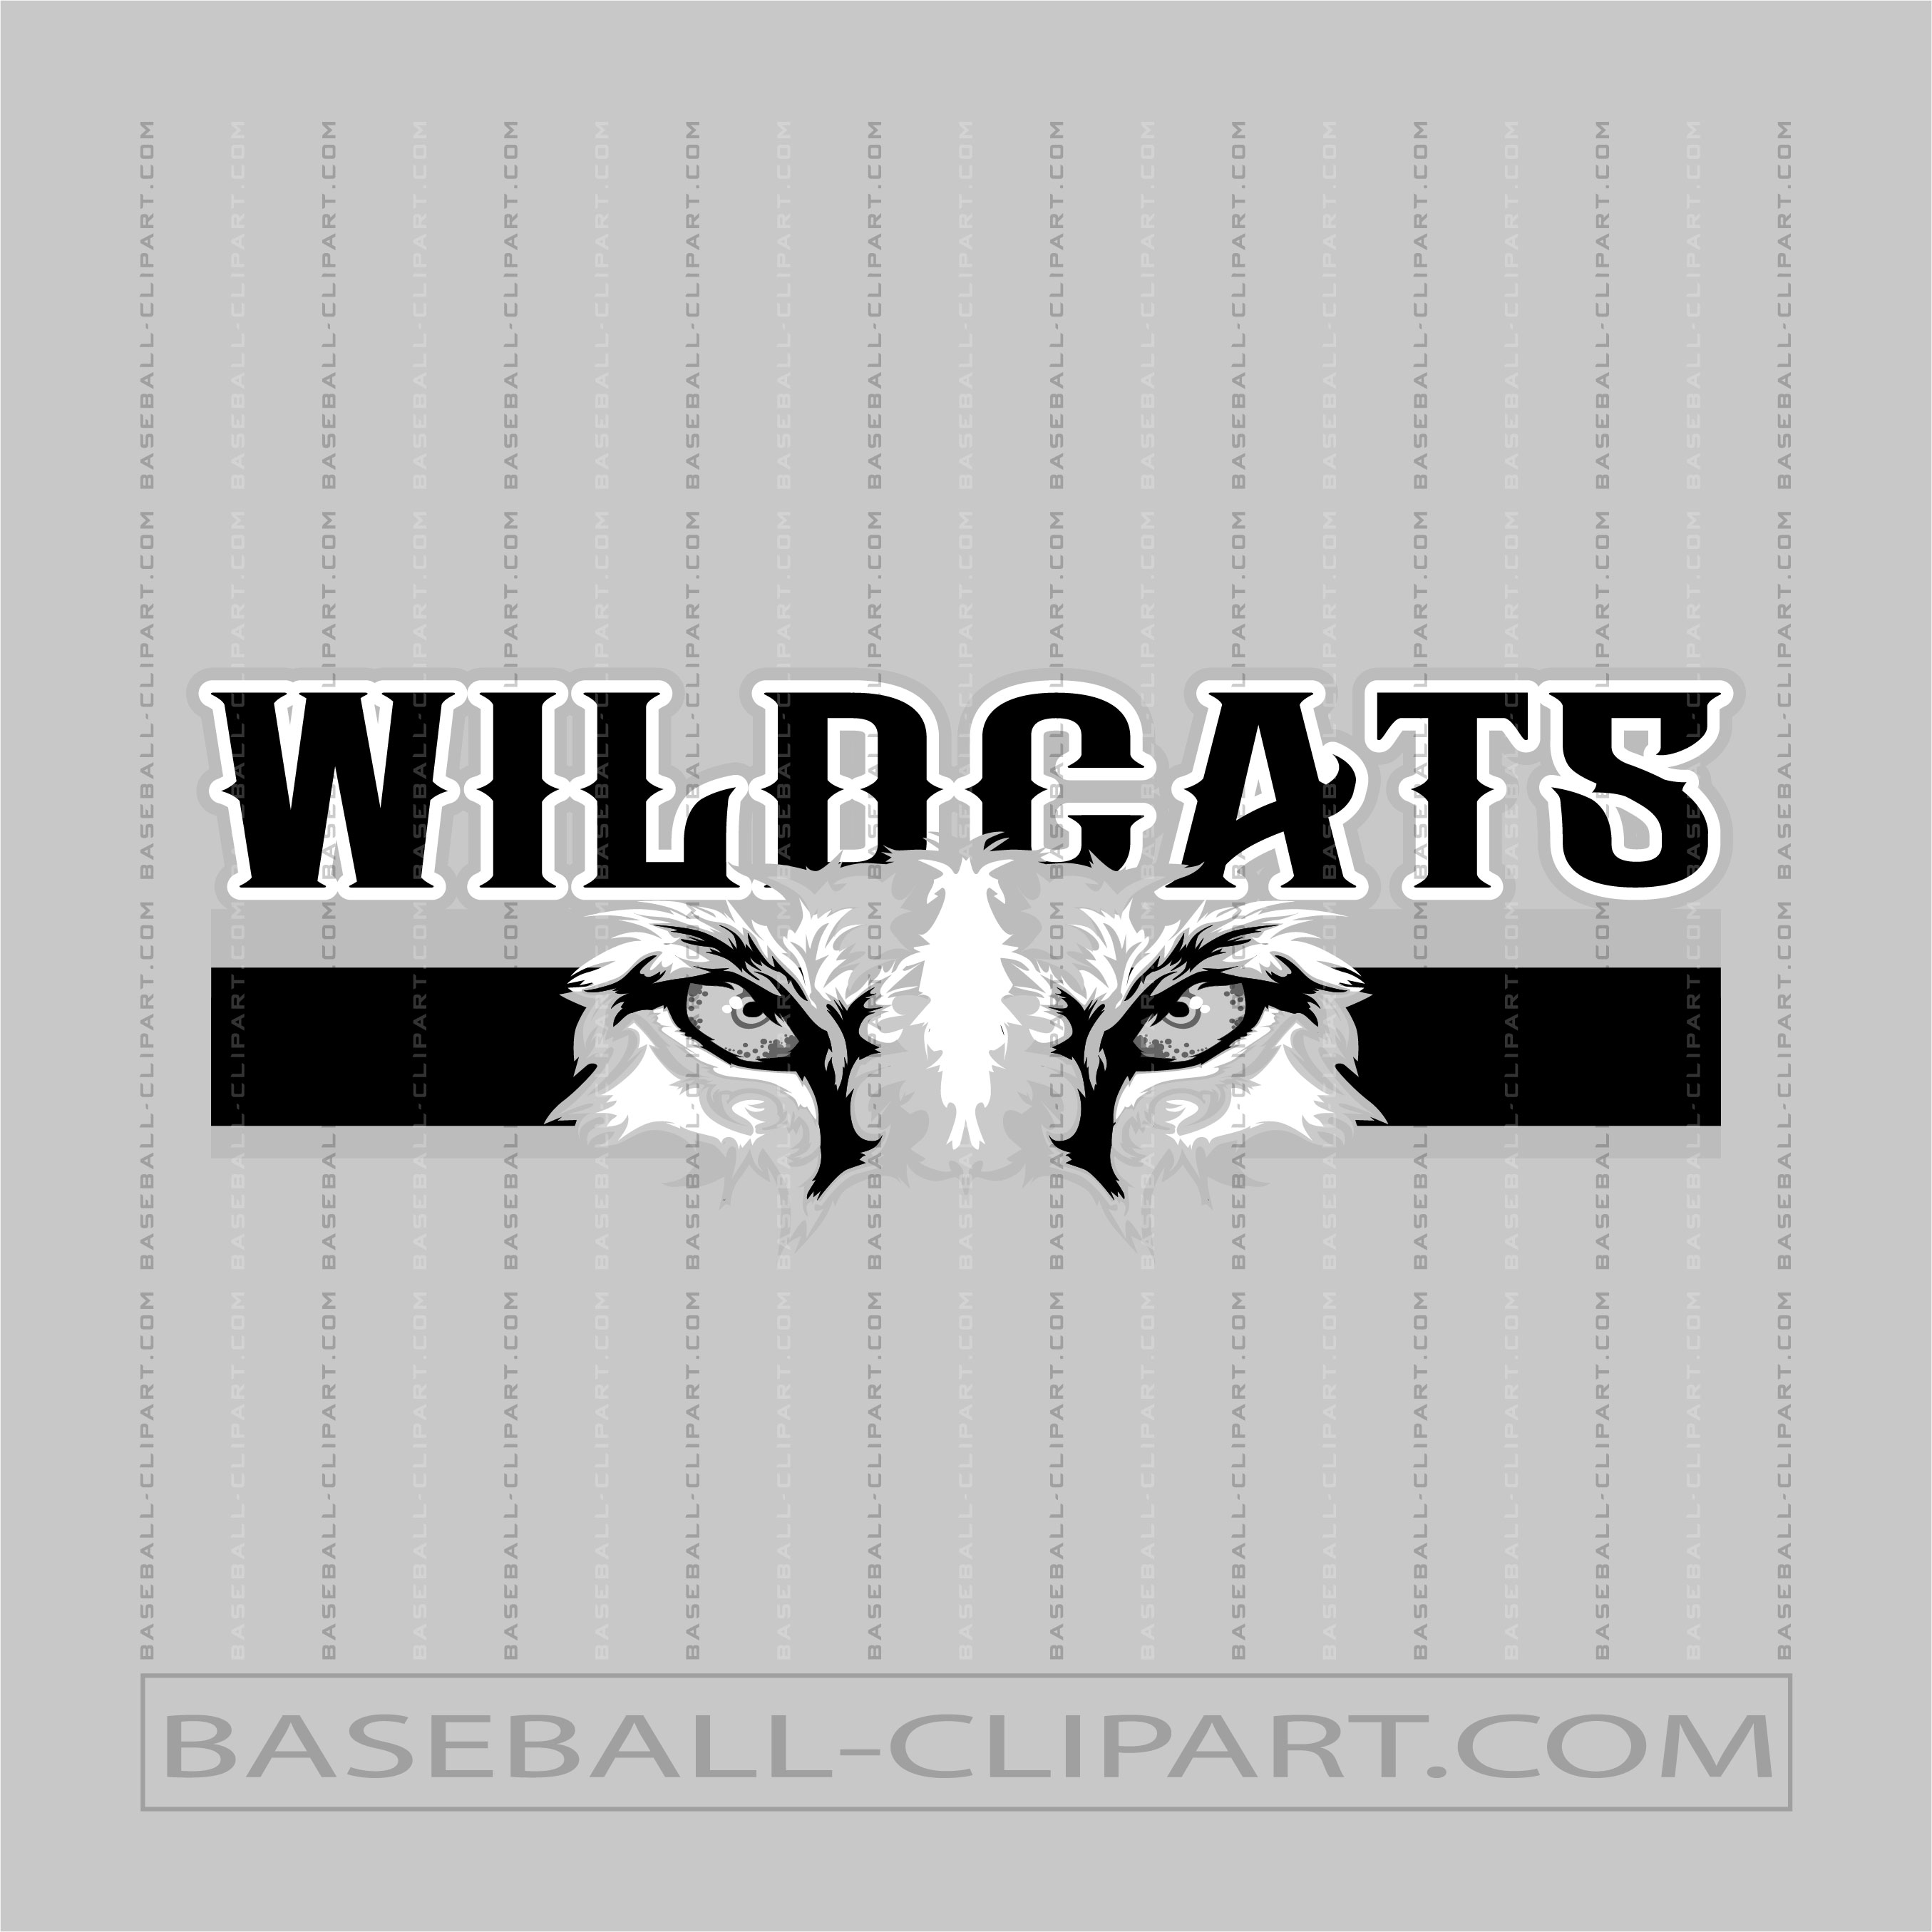 Wildcats Baseball Team Logo